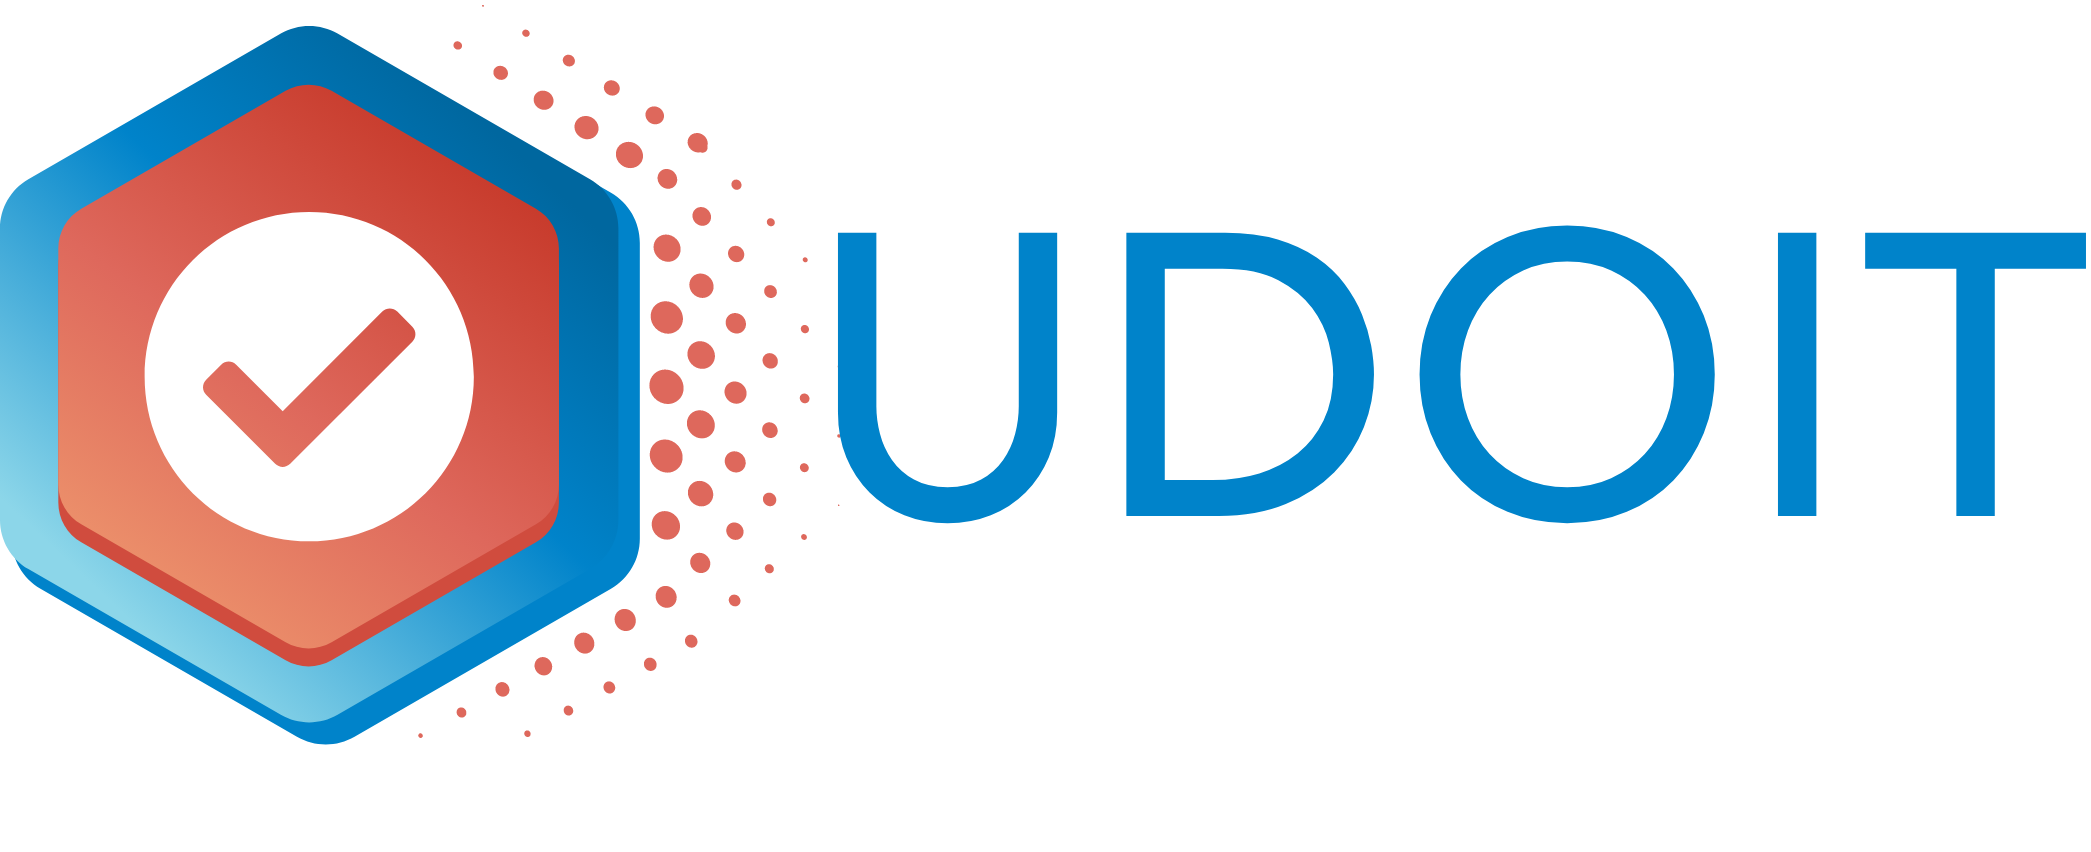 UDOIT logo